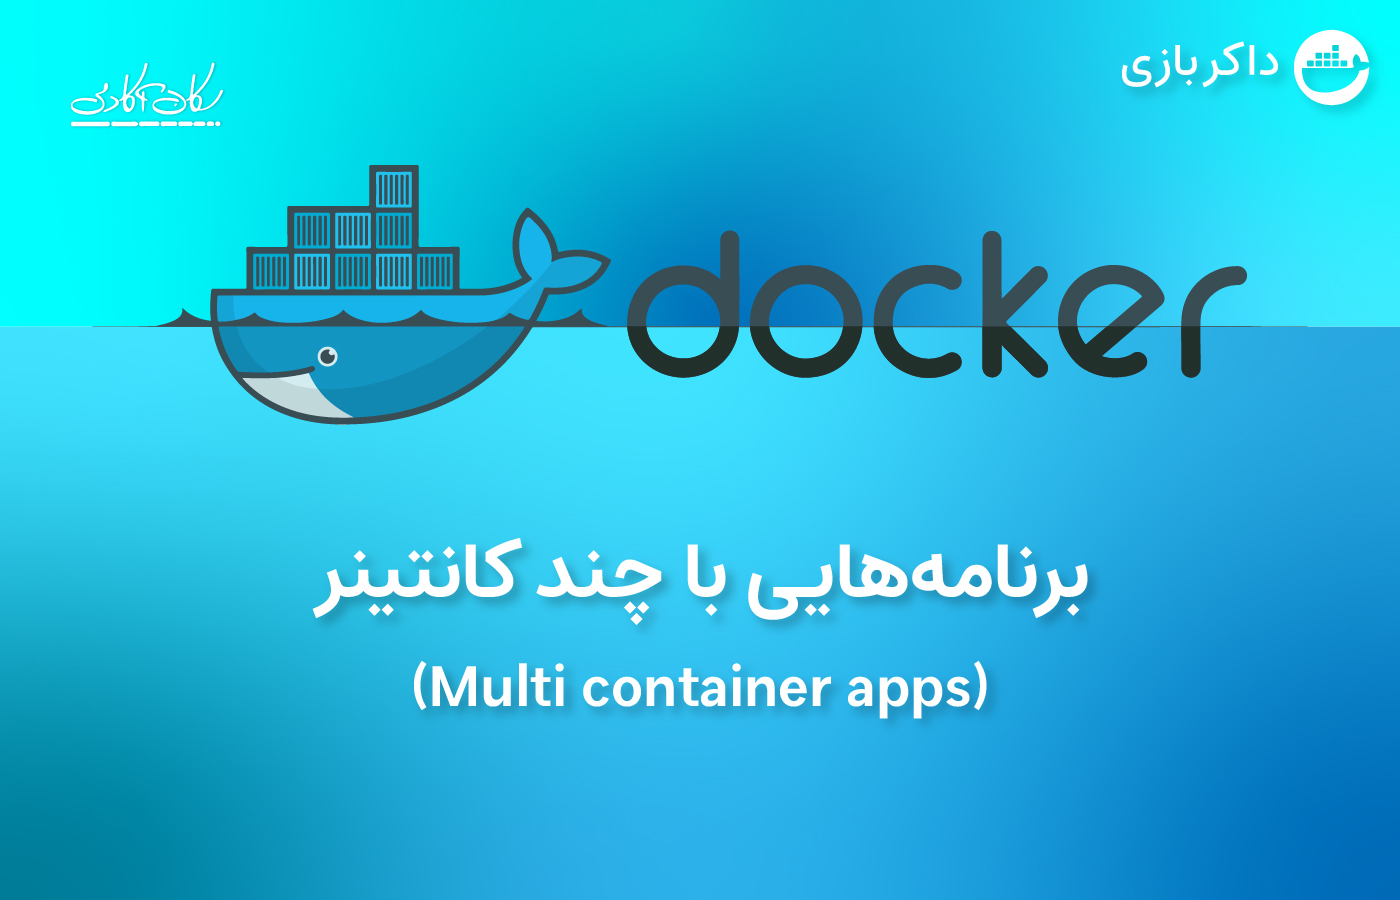 یک برنامه با چند کانتینر (Multi container apps)